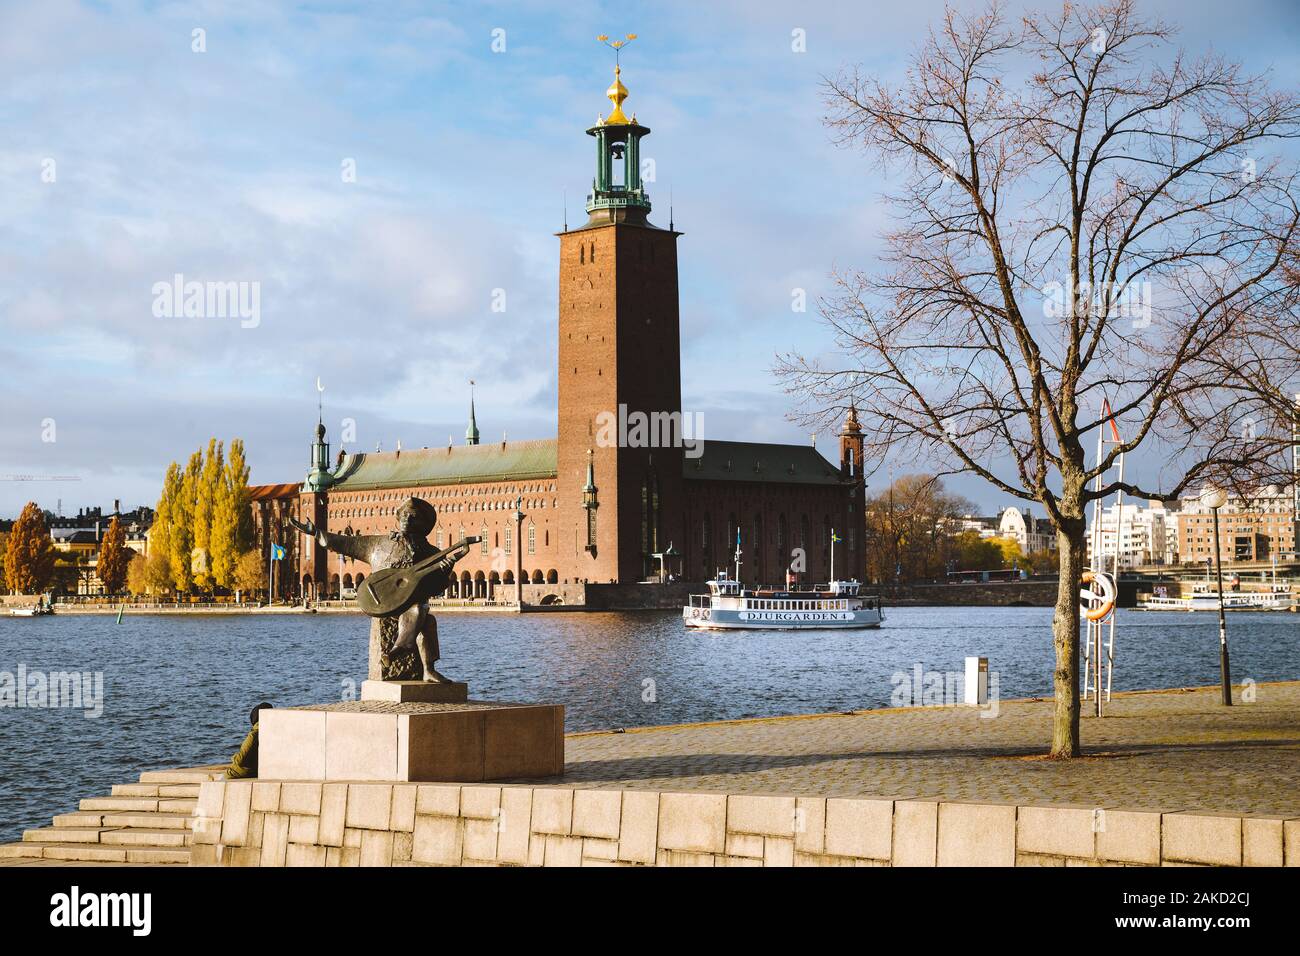 Malerischer Blick auf berühmte Stockholmer Rathaus mit Djurgarden Fähre und Evert Taube Statue, Stockholm, Schweden, Skandinavien Stockfoto